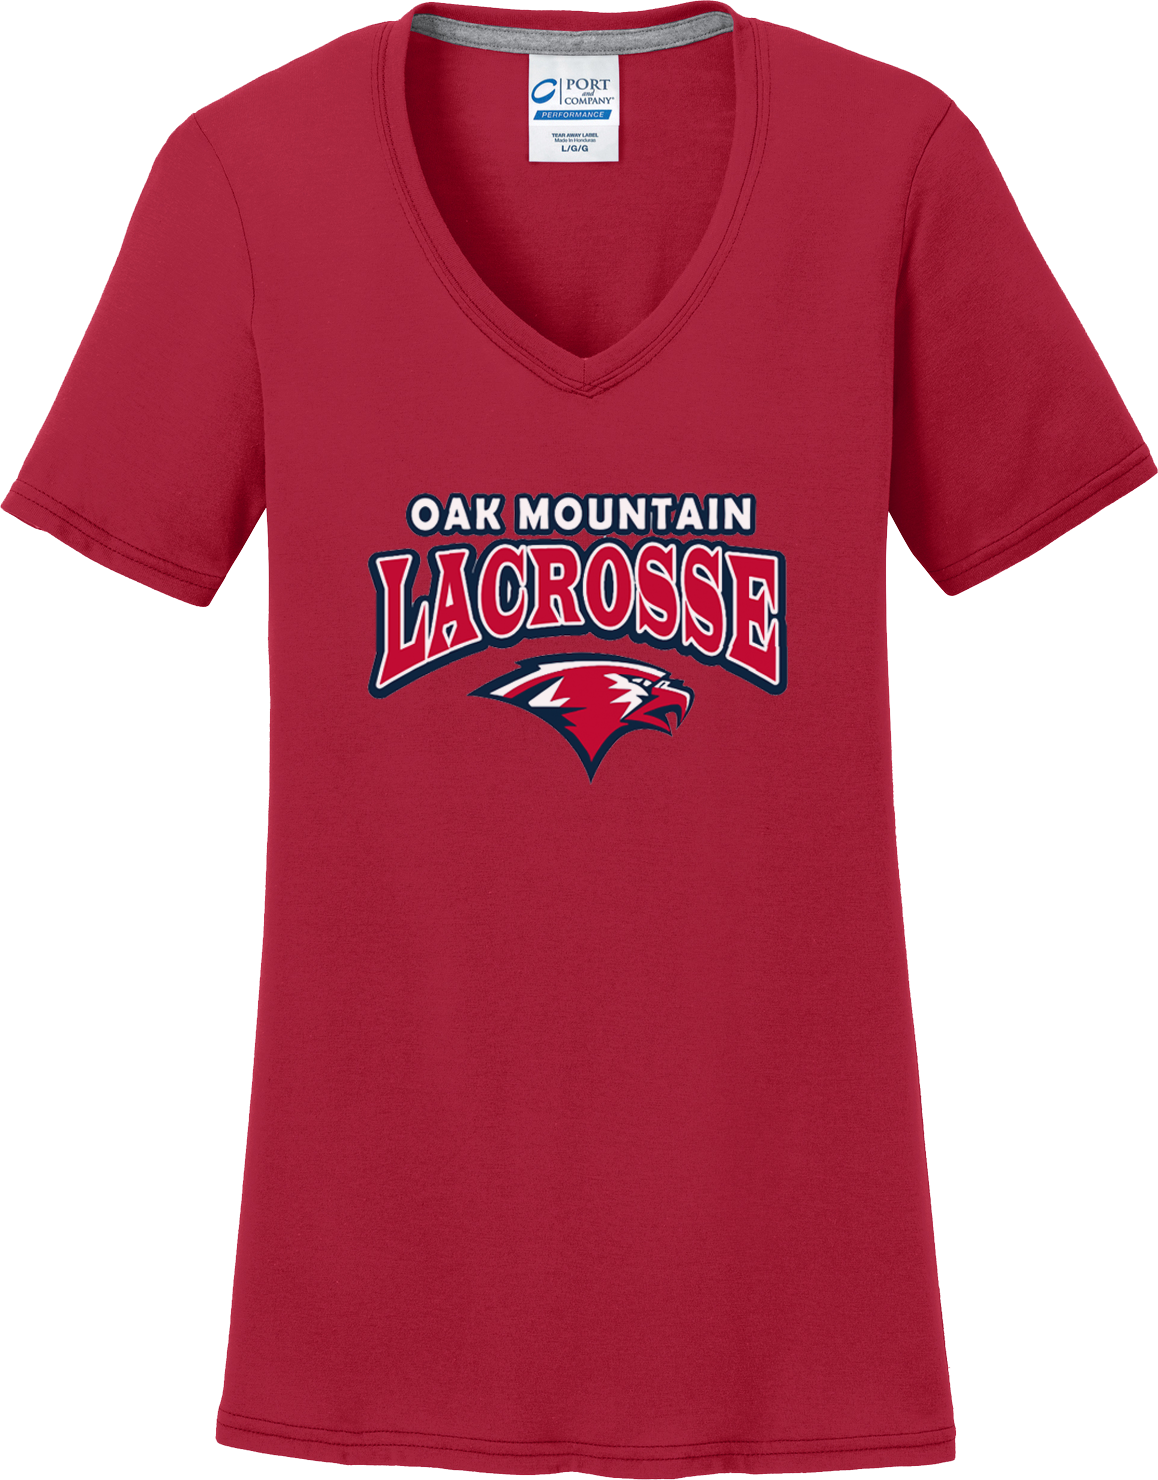 Oak Mtn. Lacrosse Women's Red T-Shirt